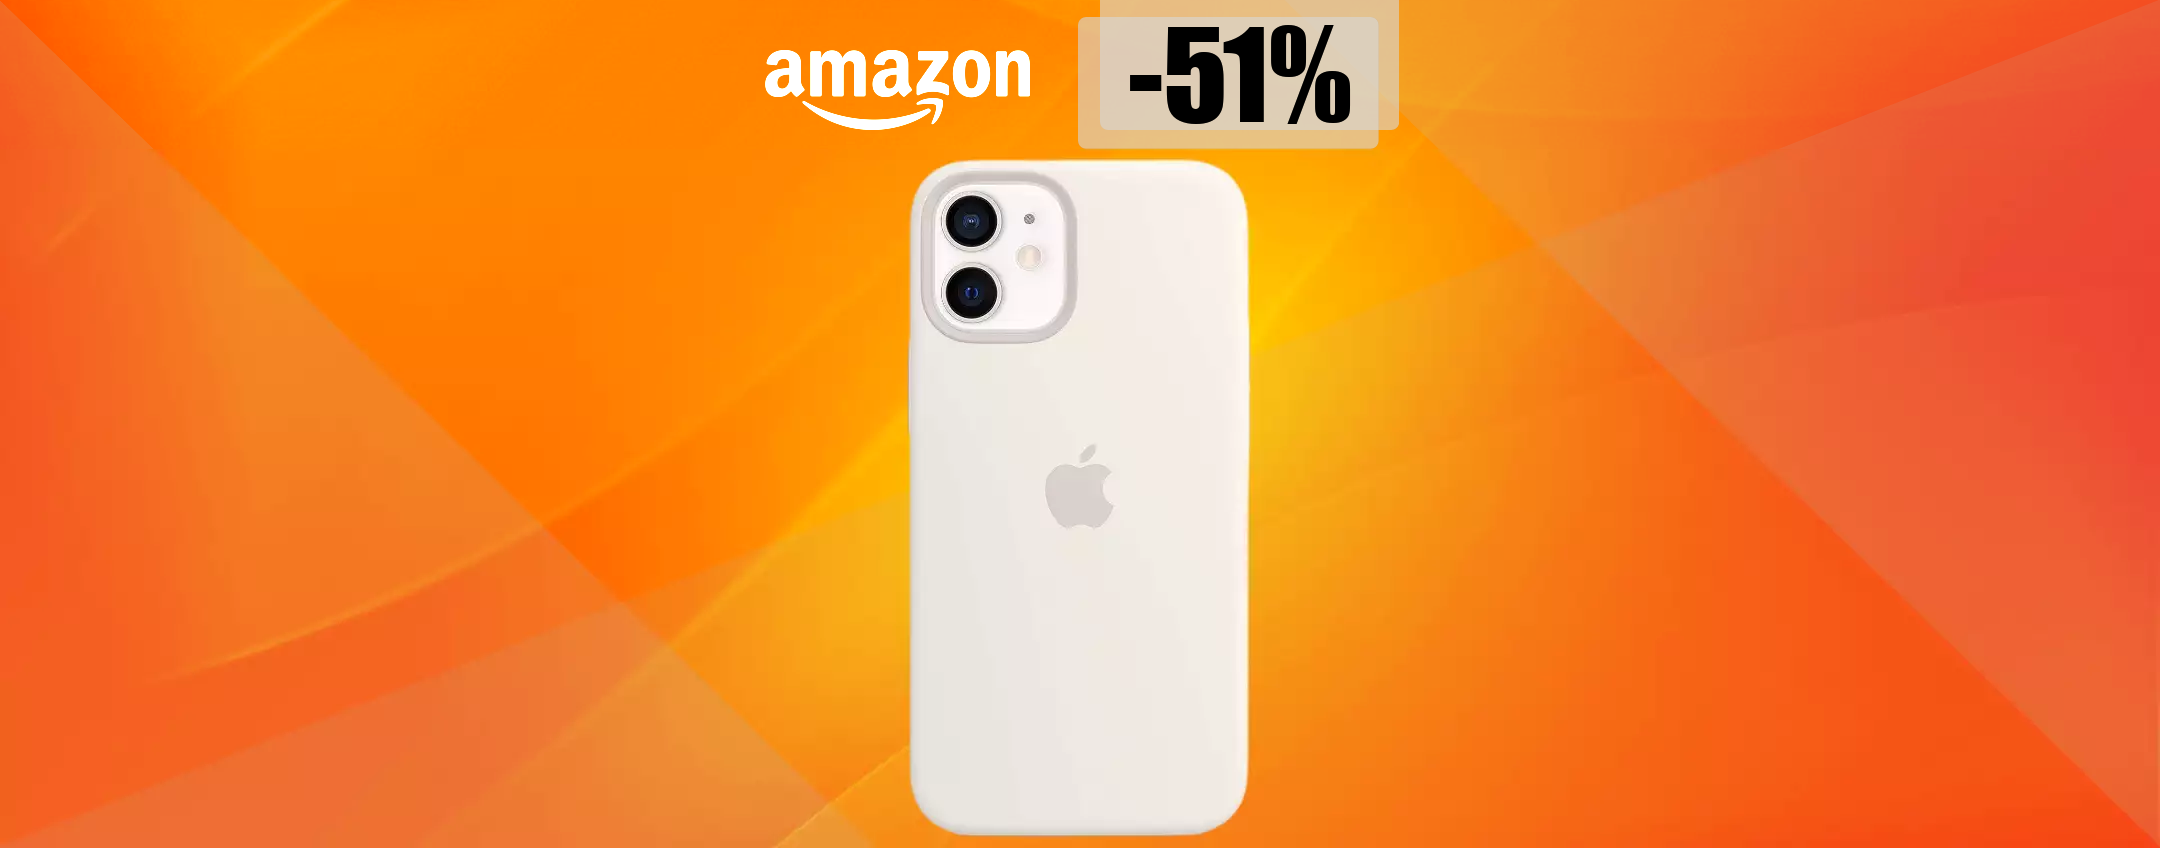 Cover ORIGINALE iPhone 12 mini: best buy a meno di metà prezzo (26€)